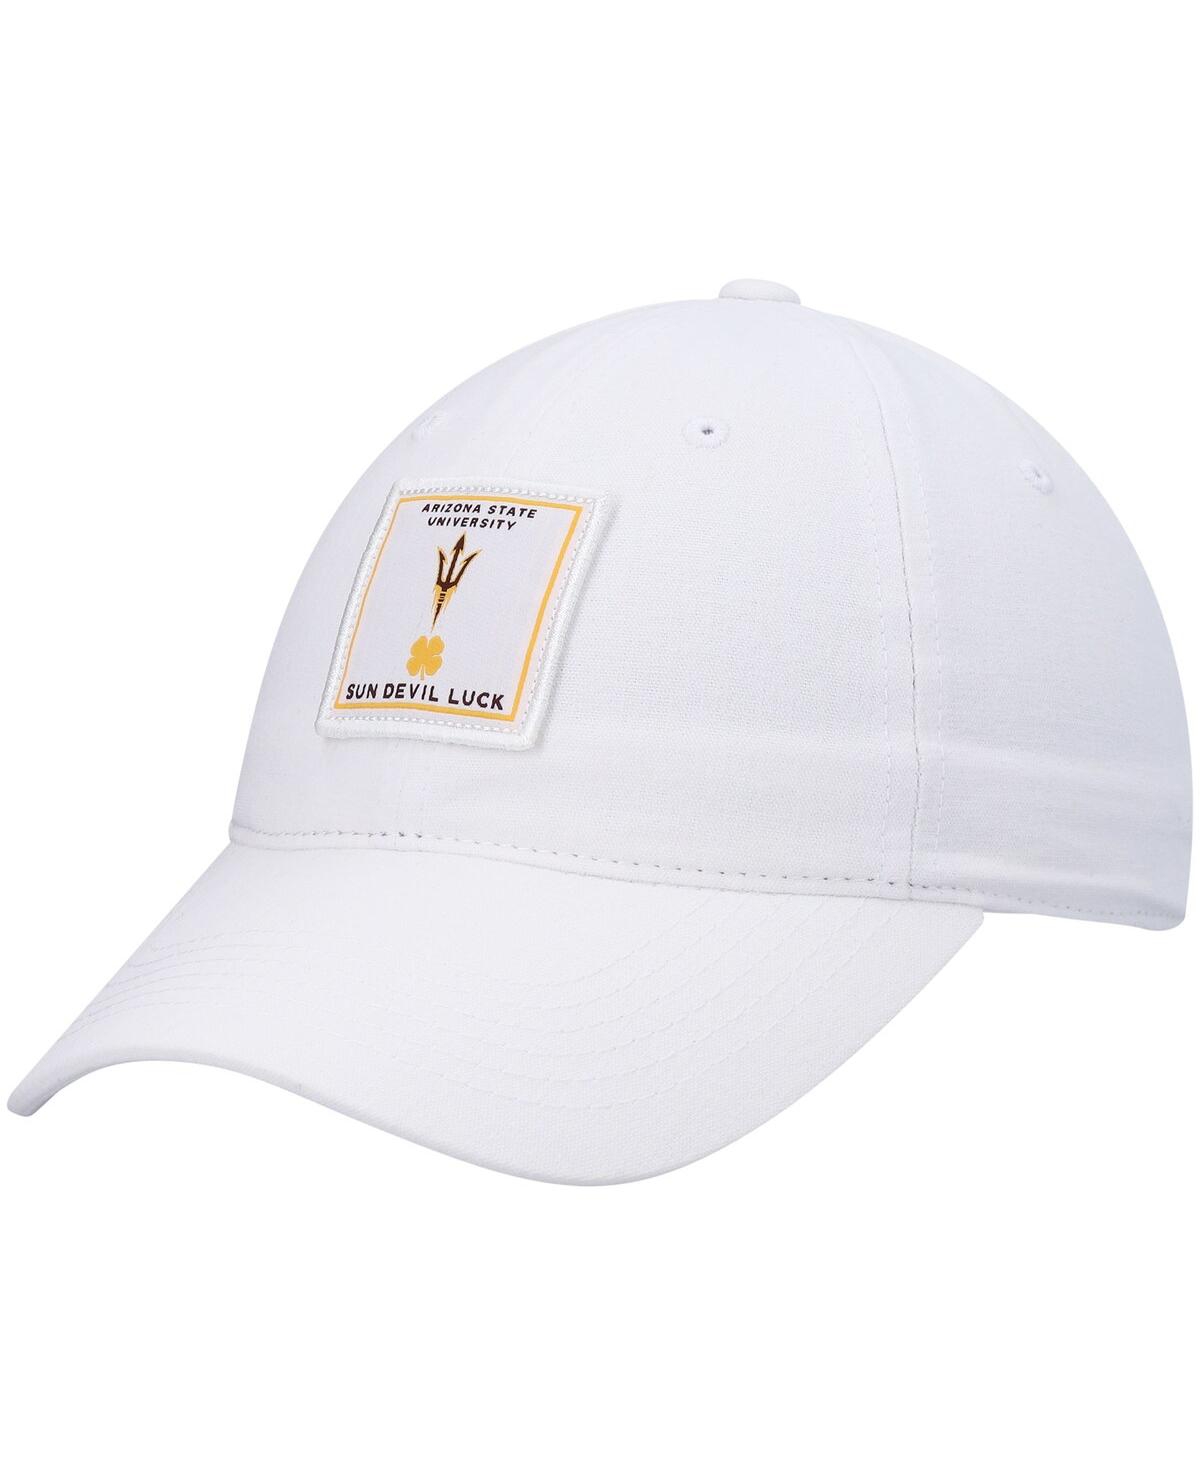 Men's White Arizona State Sun Devils Dream Adjustable Hat - White